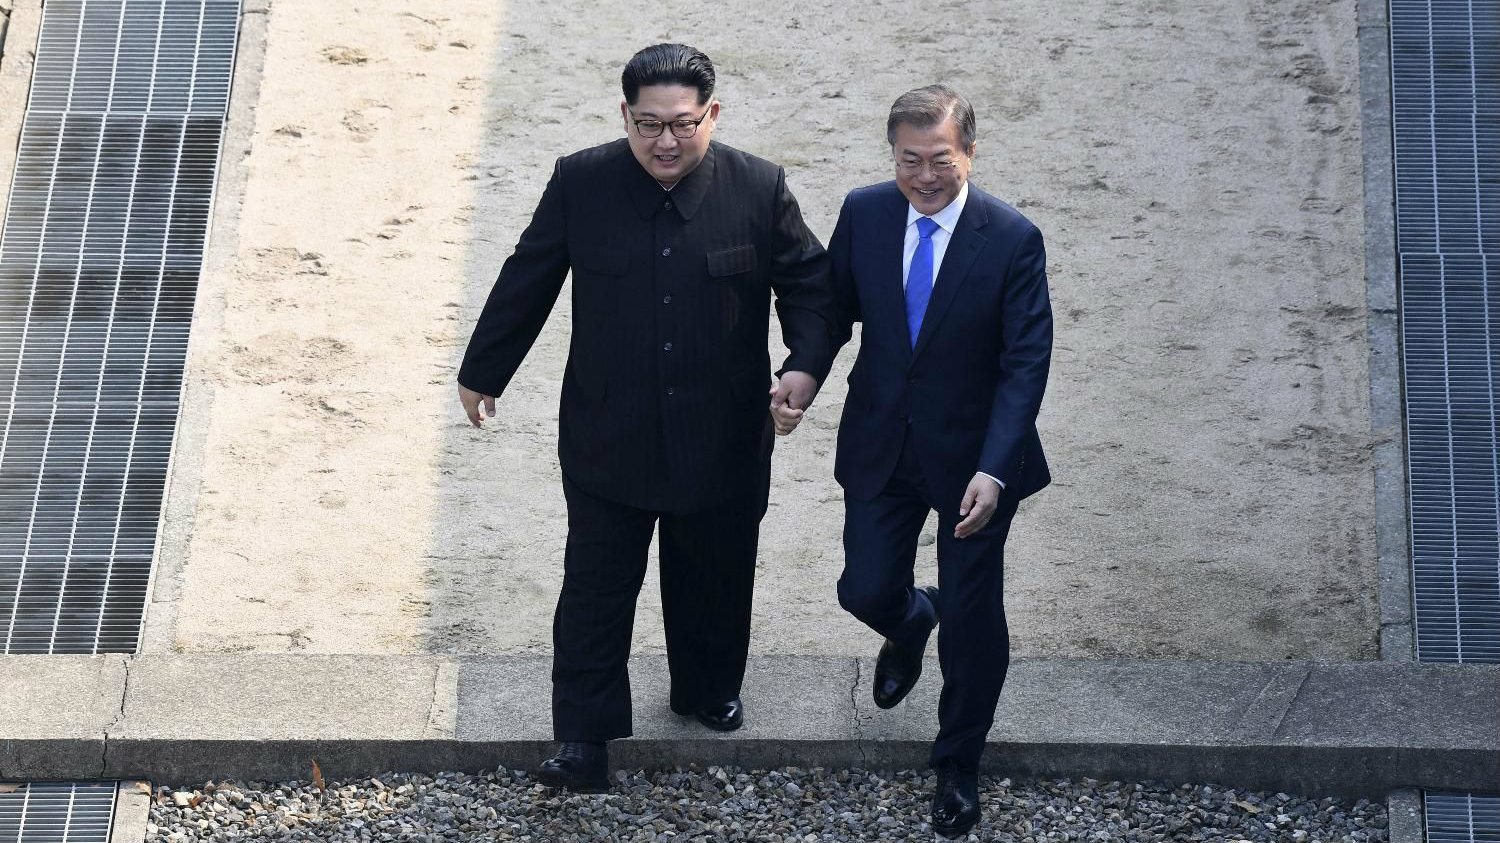 Južna Koreja: Žalosno je što nema dogovora na samitu Tramp-Kim, ali je ipak bilo napretka 1